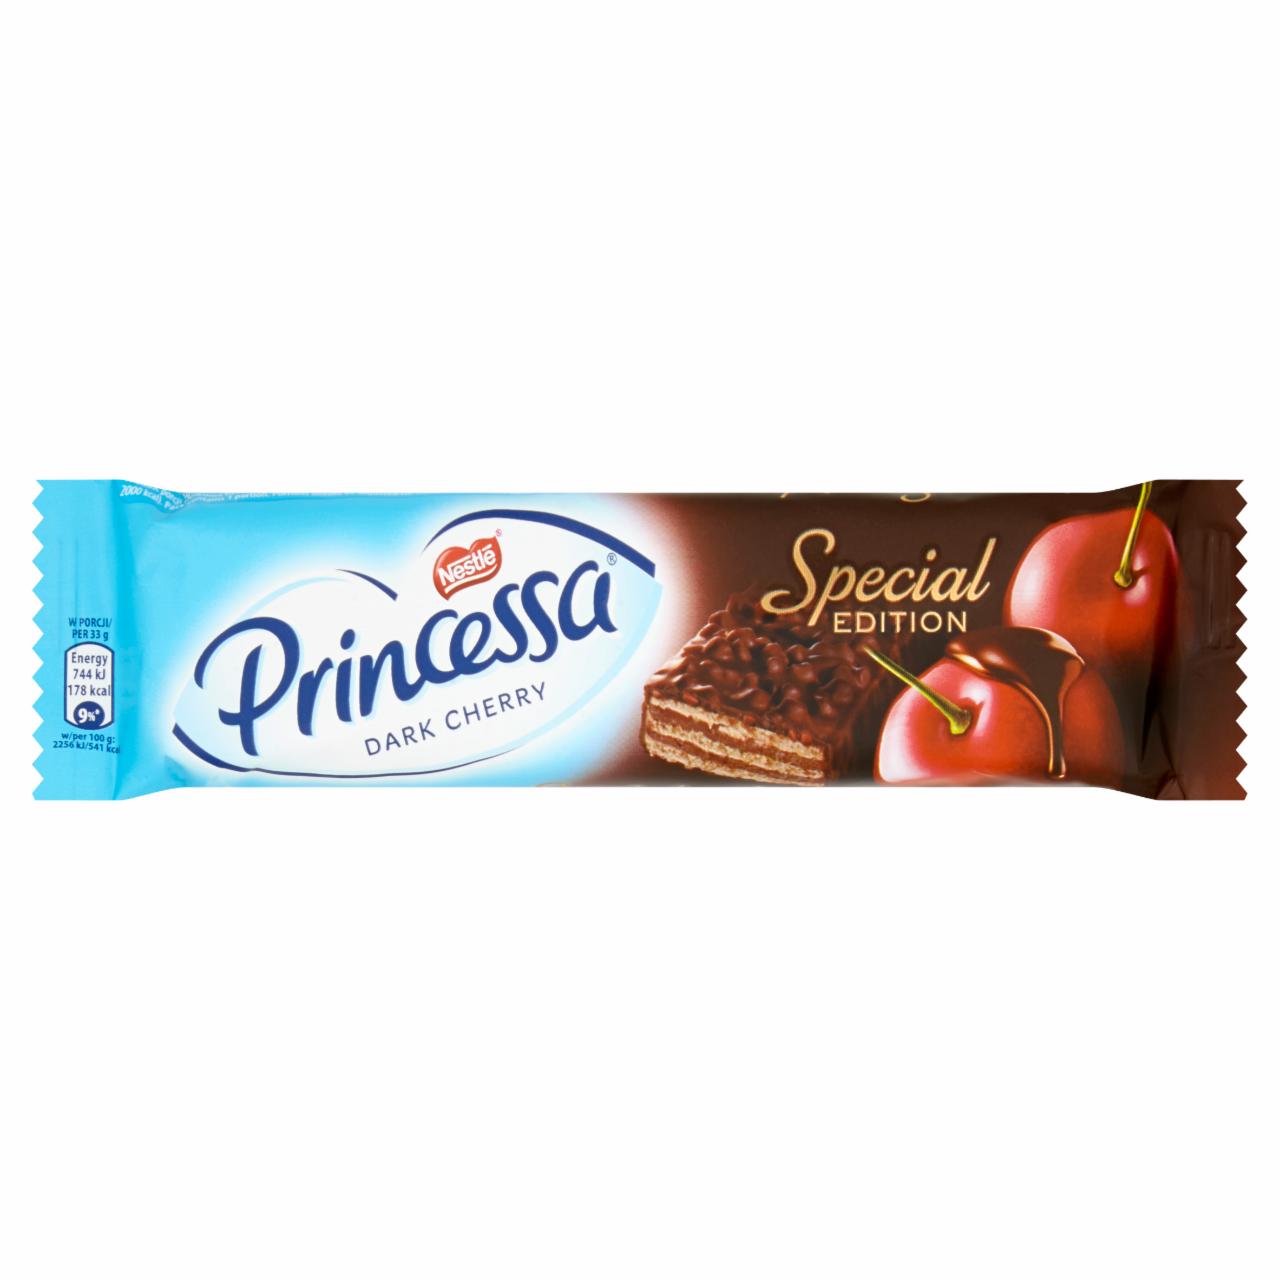 Zdjęcia - Princessa Dark Cherry Wafel przekładany kremem o smaku wiśniowym oblany czekoladą deserową 33 g